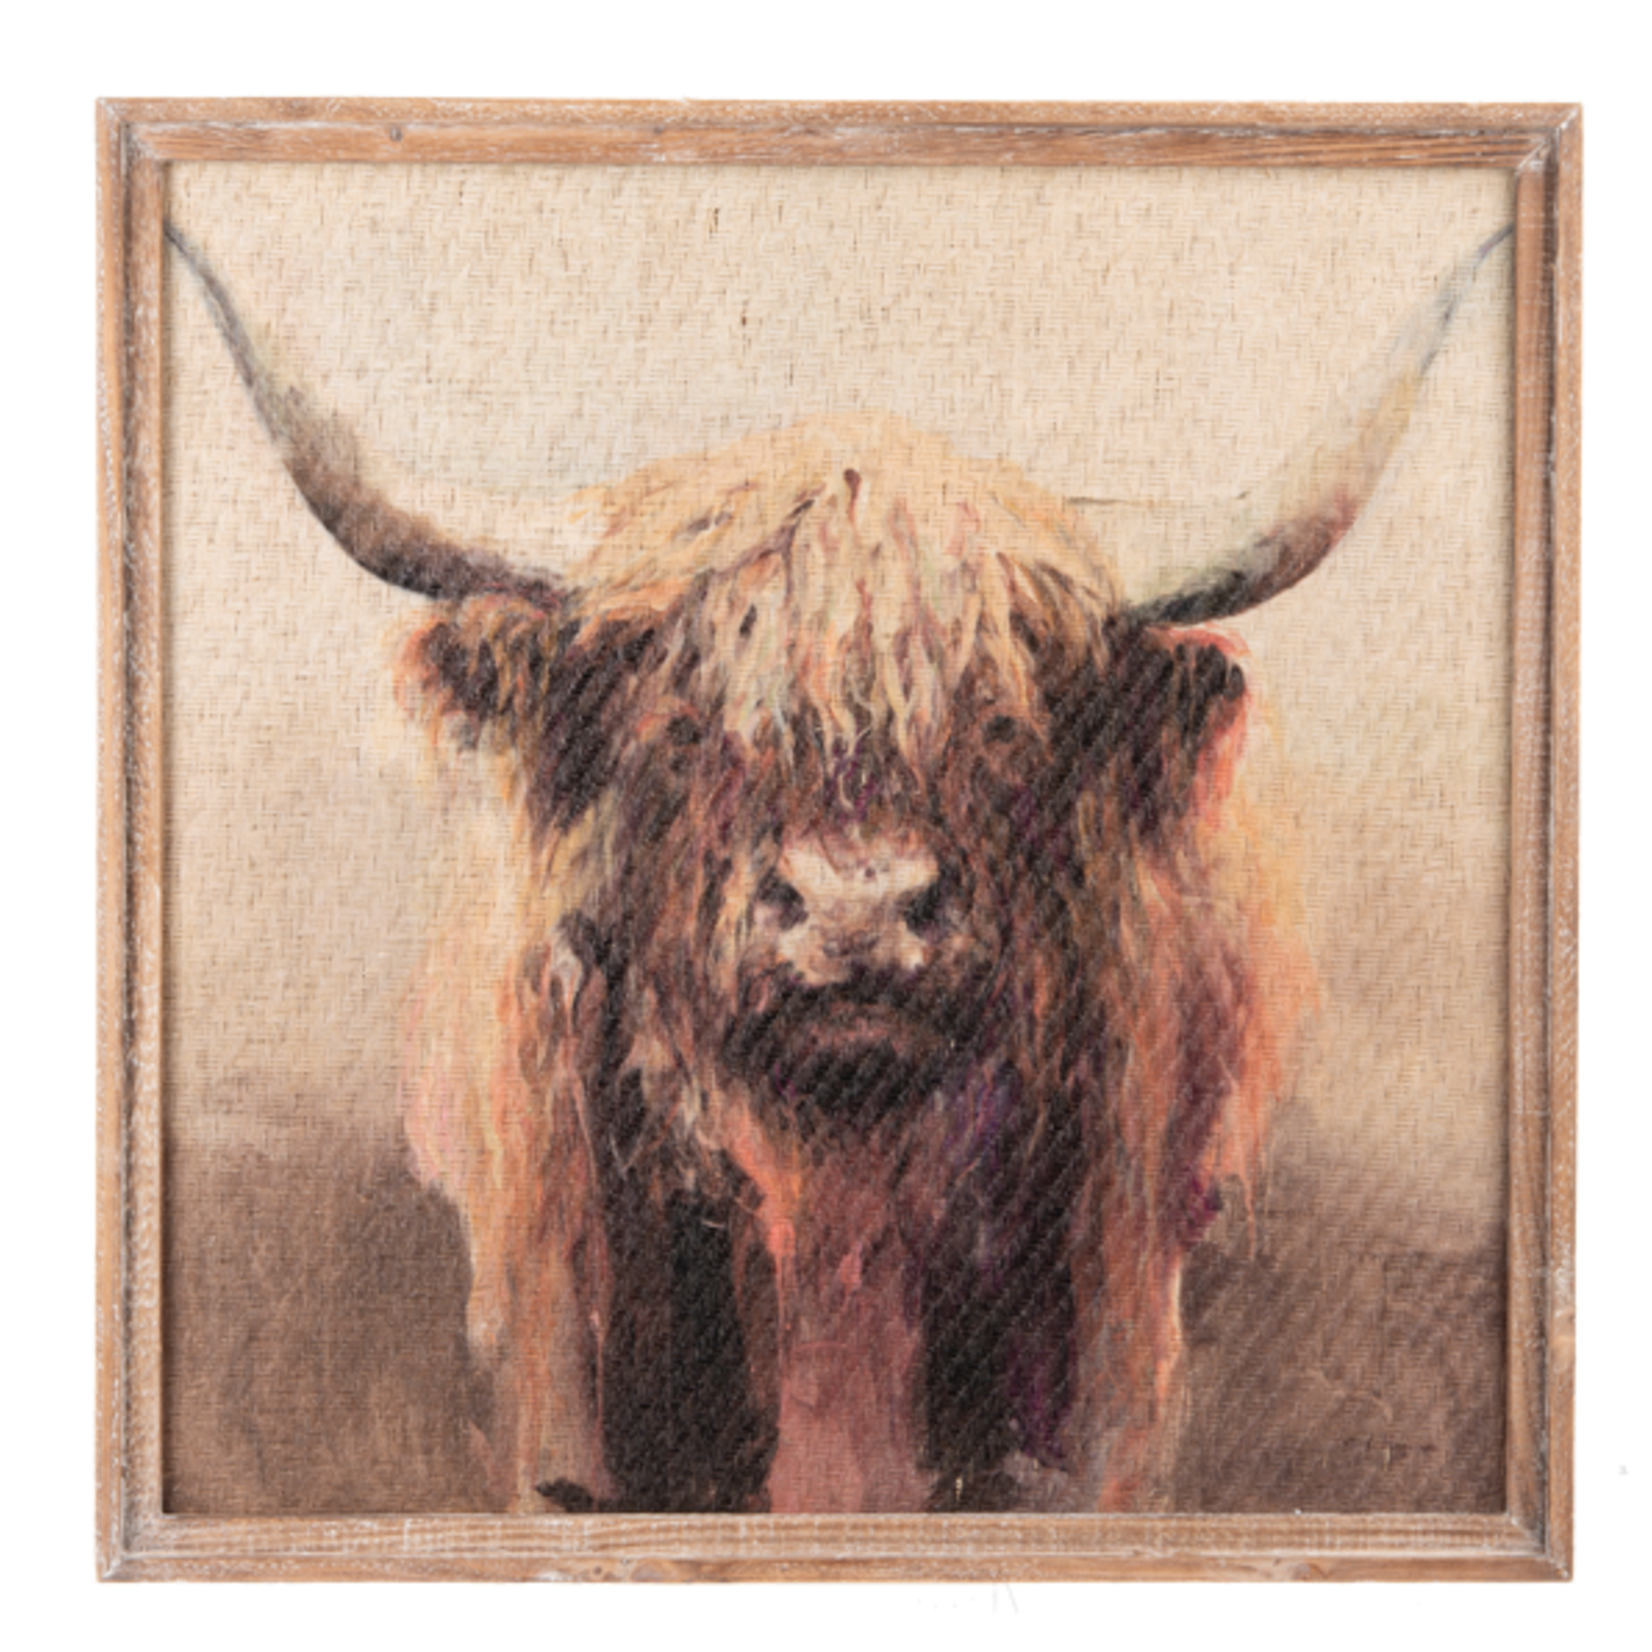 CBK Watercolor Highland Cow Wall Decor